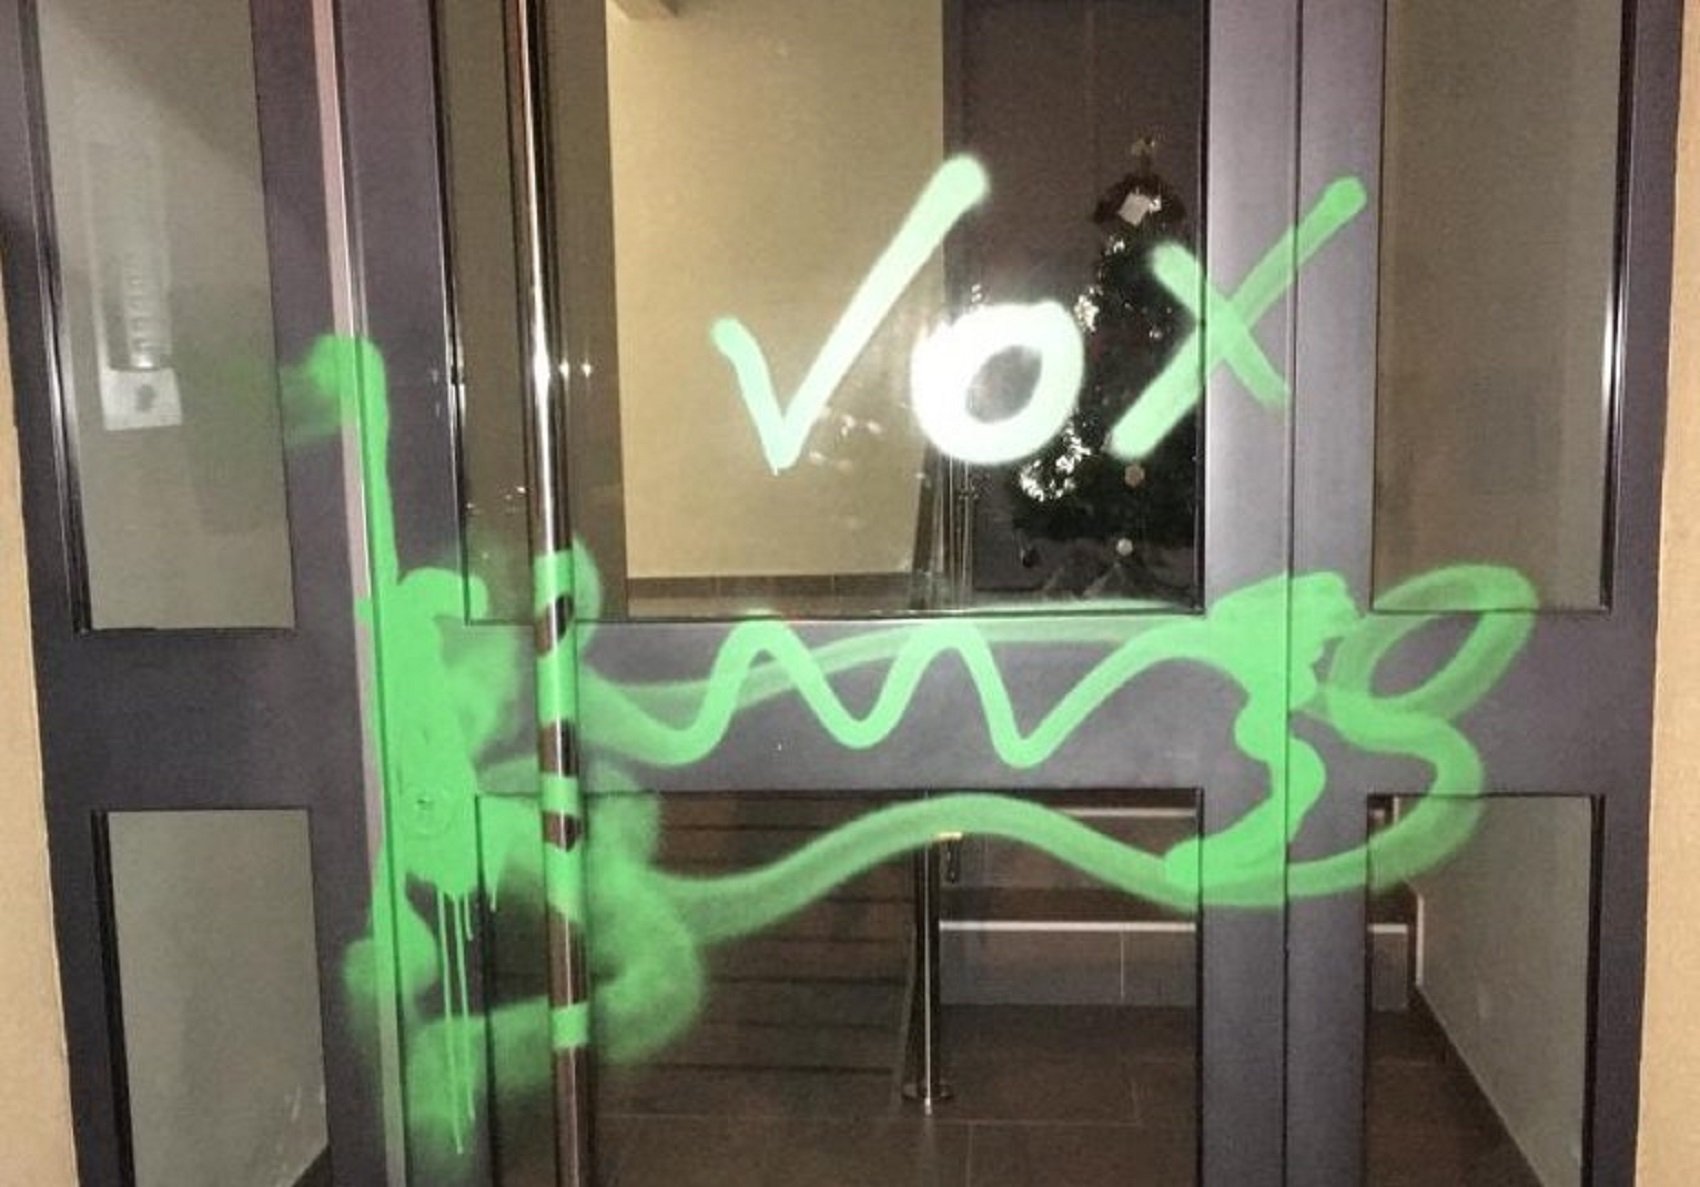 Vox "marca" el domicili de l'alcalde de Vilassar de Dalt